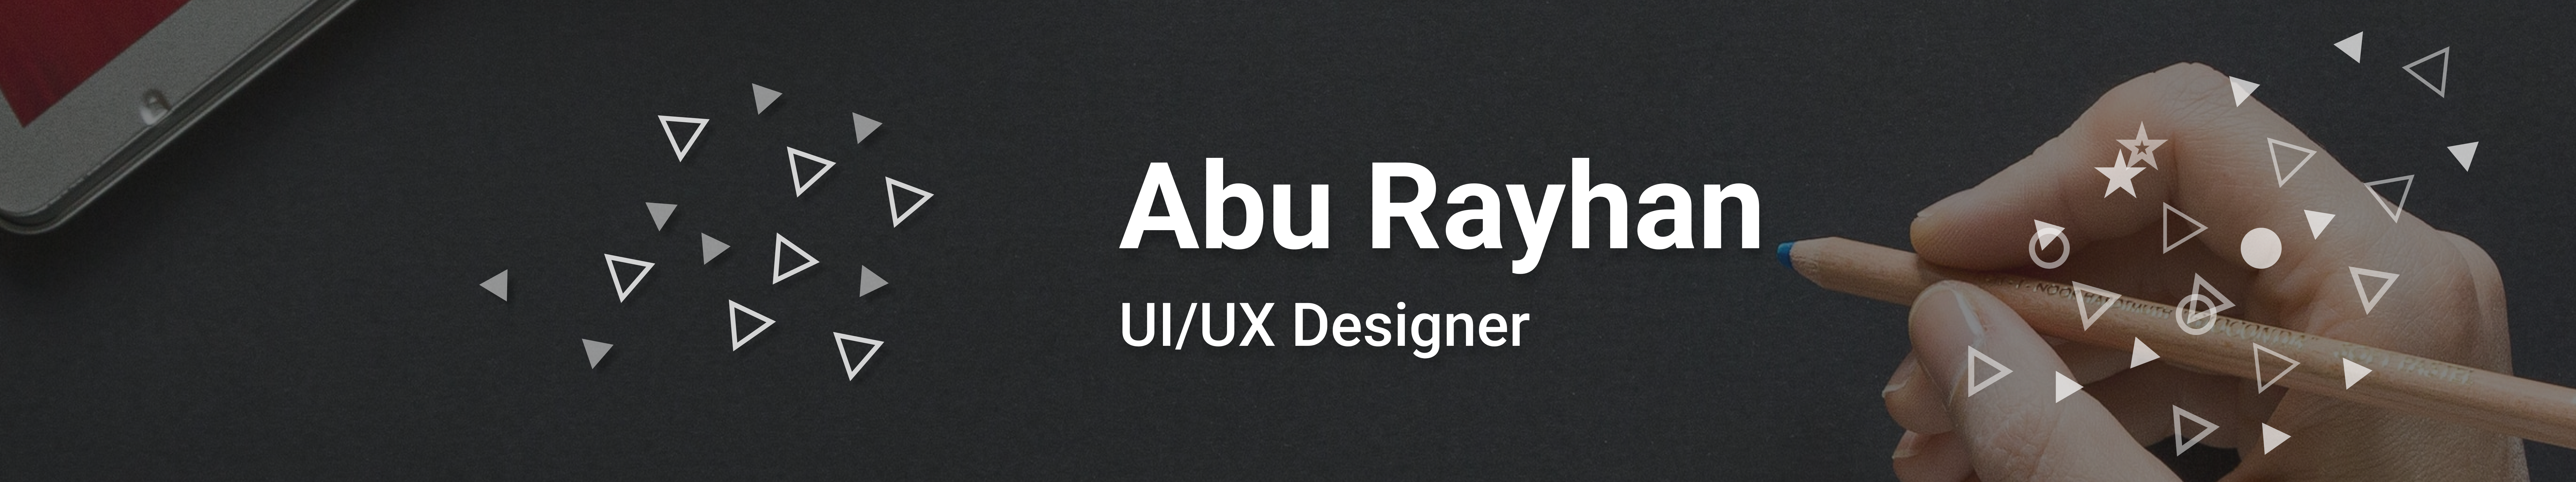 Banner de perfil de Abu Rayhan